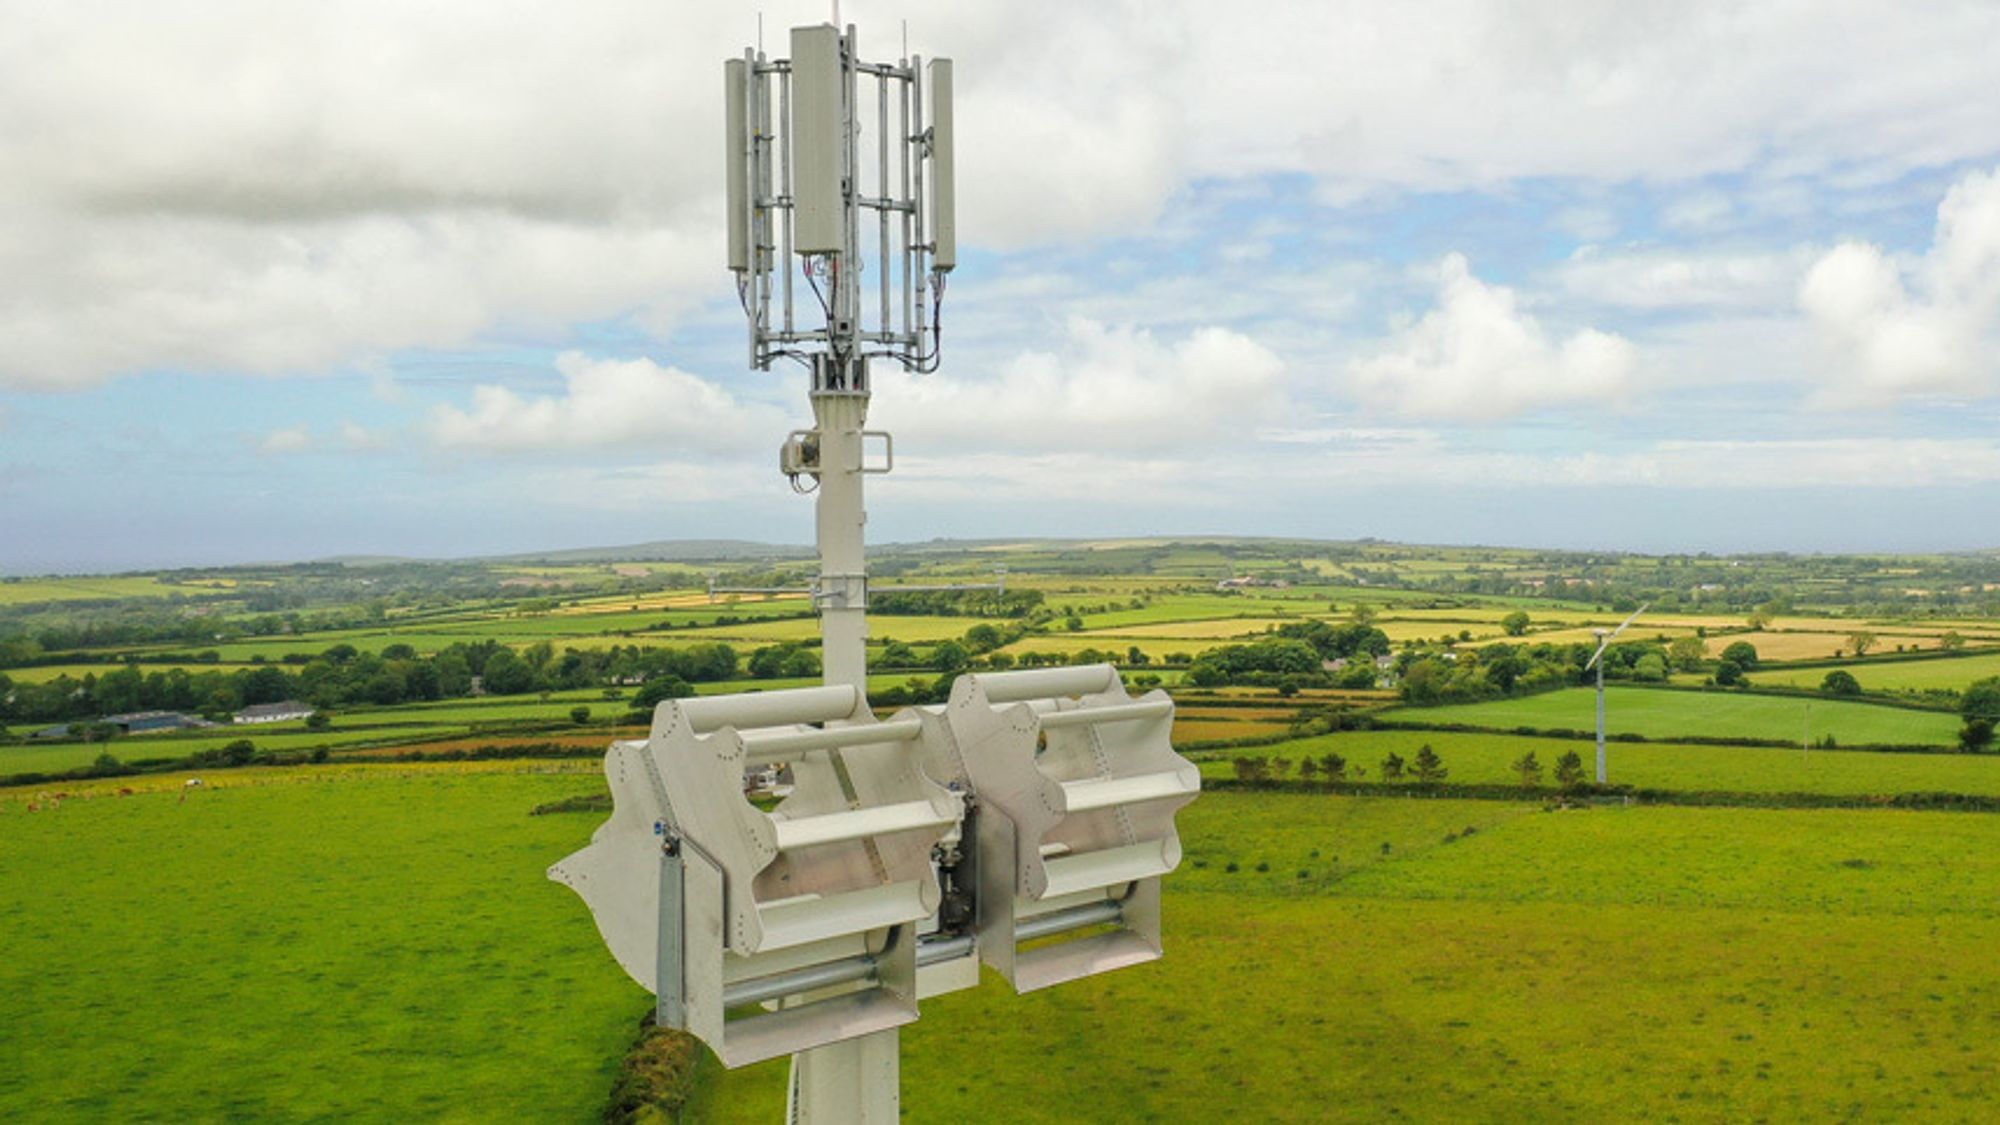 Mobilmasten Vodafone tester ut ved Eglwyswrw, fotografert med drone.